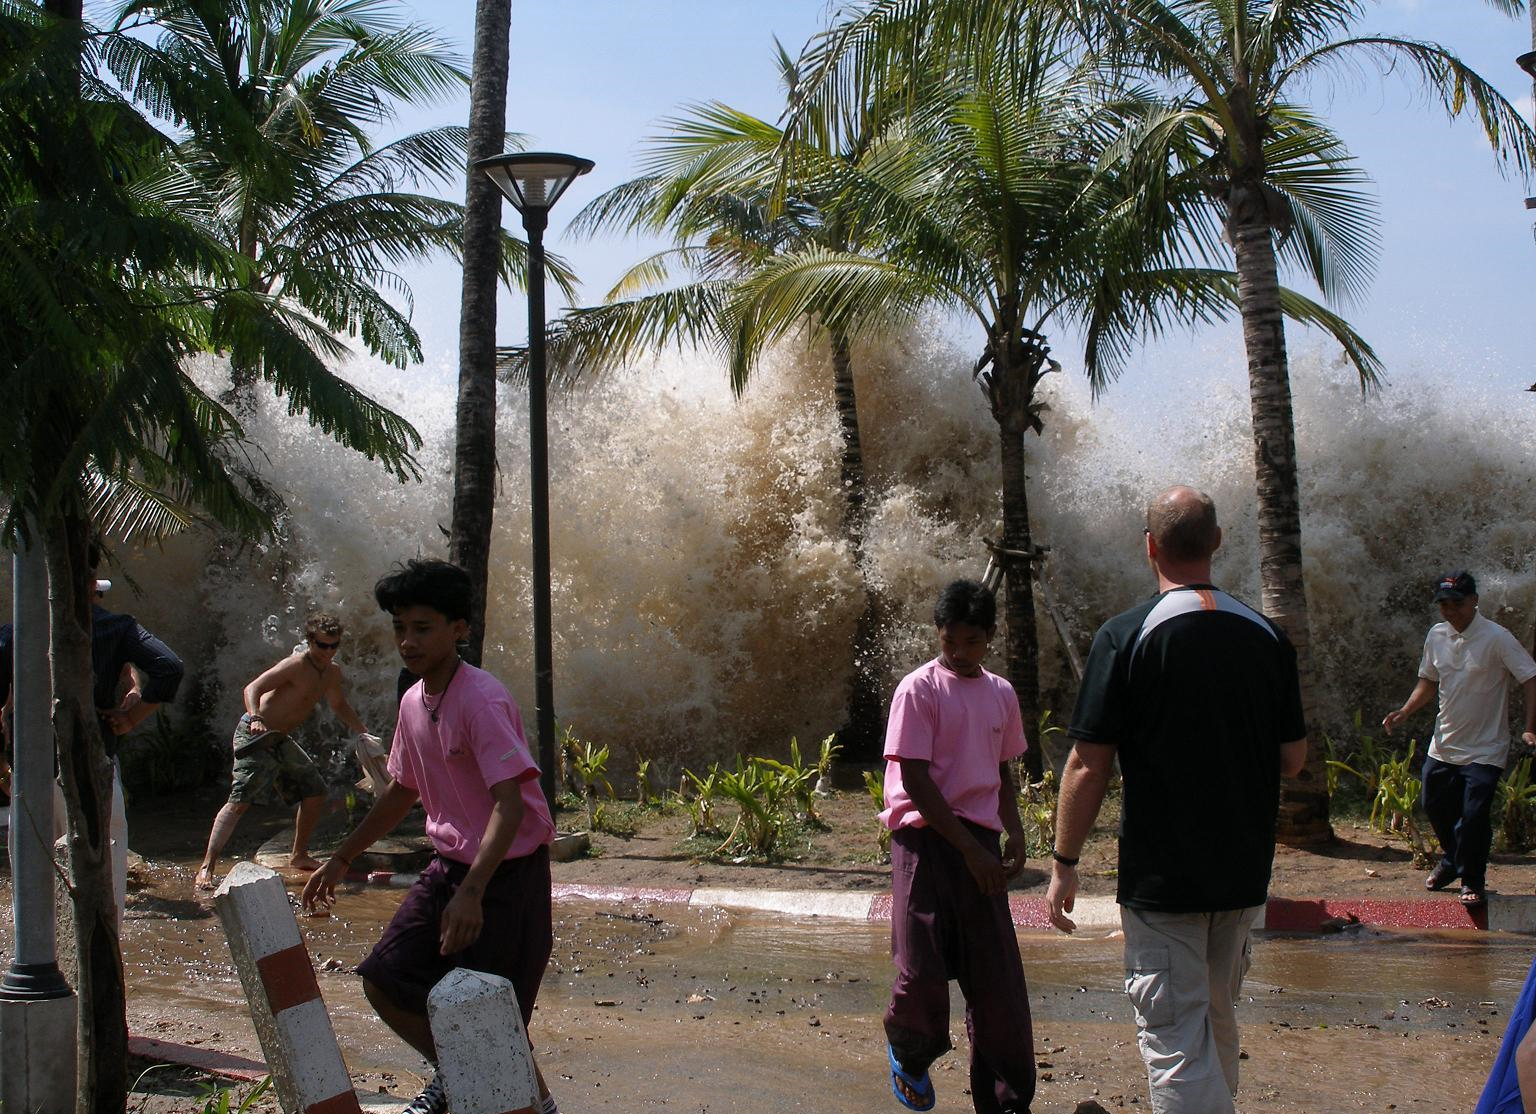 Tsunami wave hitting Ao Nang in Krabi Province, Thailand. Photo by David Rydevik (email: david.rydevikgmail.com), Stockholm, Sweden, December 26, 2004.